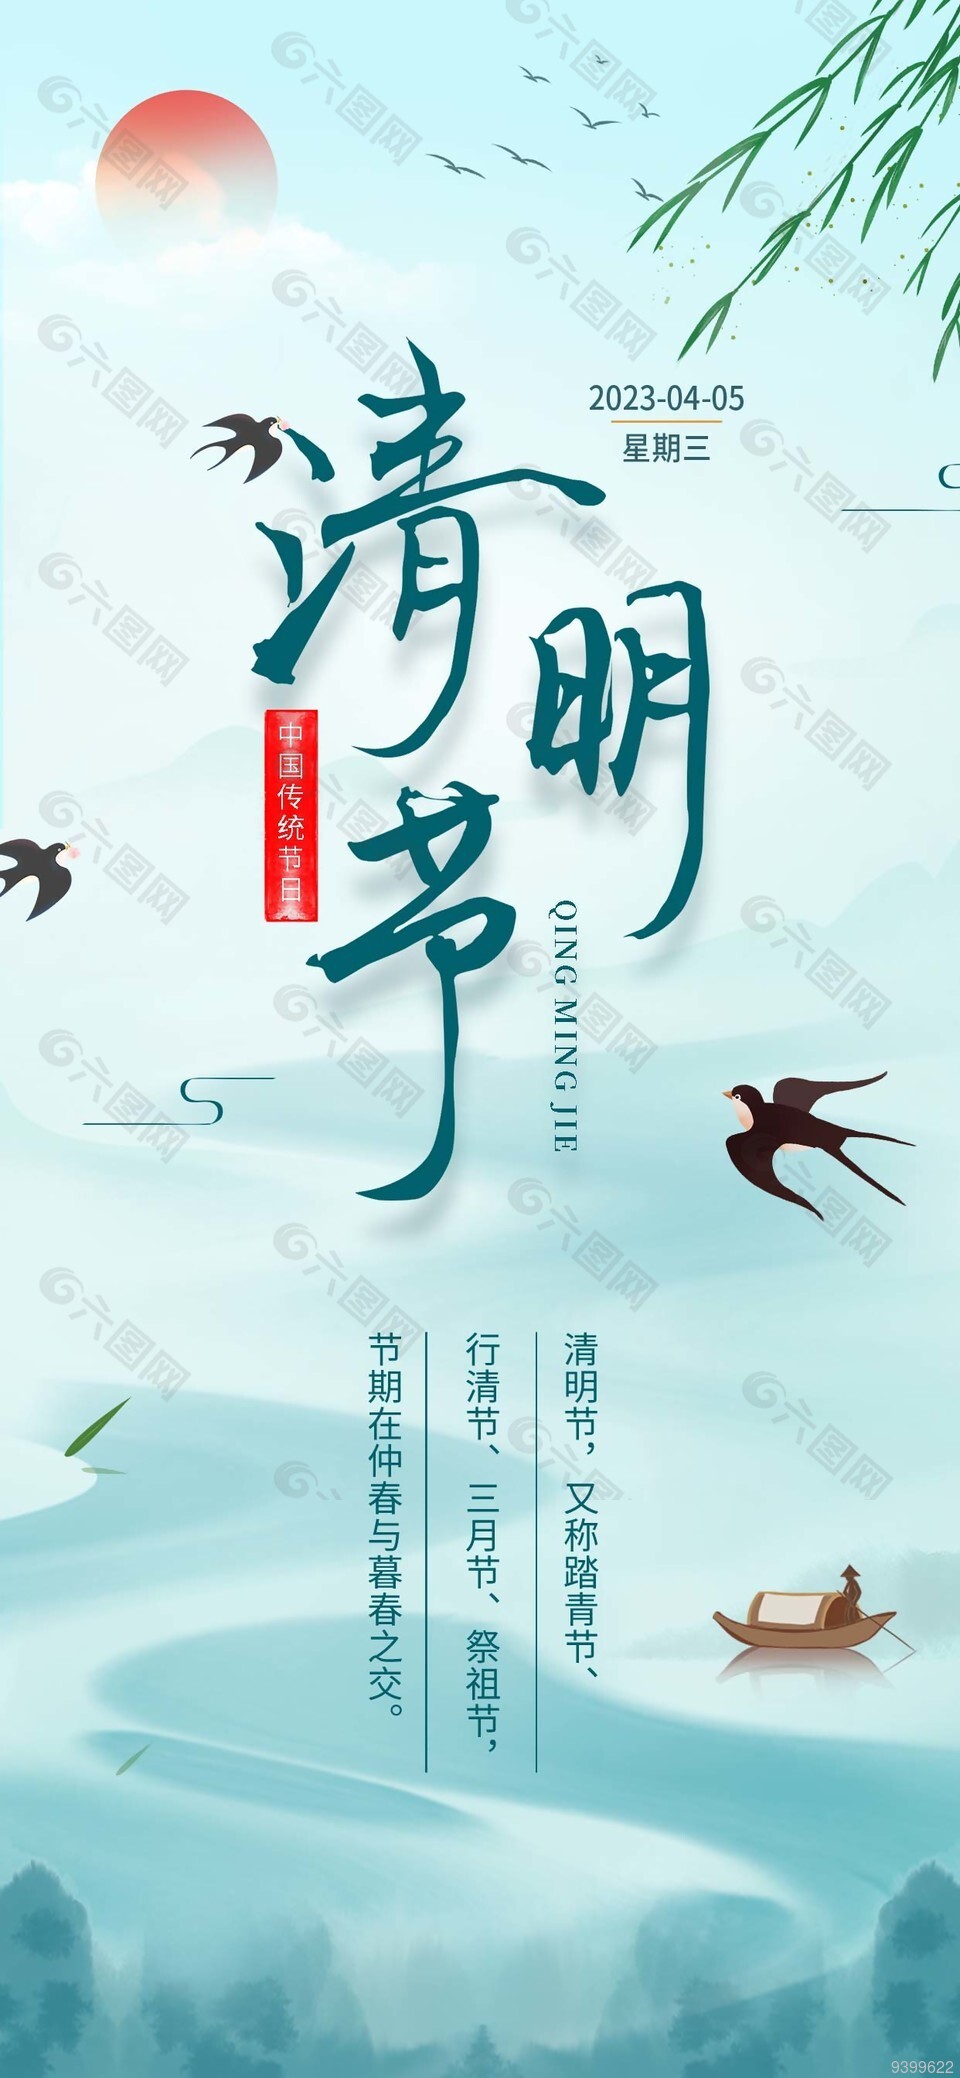 中国传统节日清明节水墨背景海报图片大全